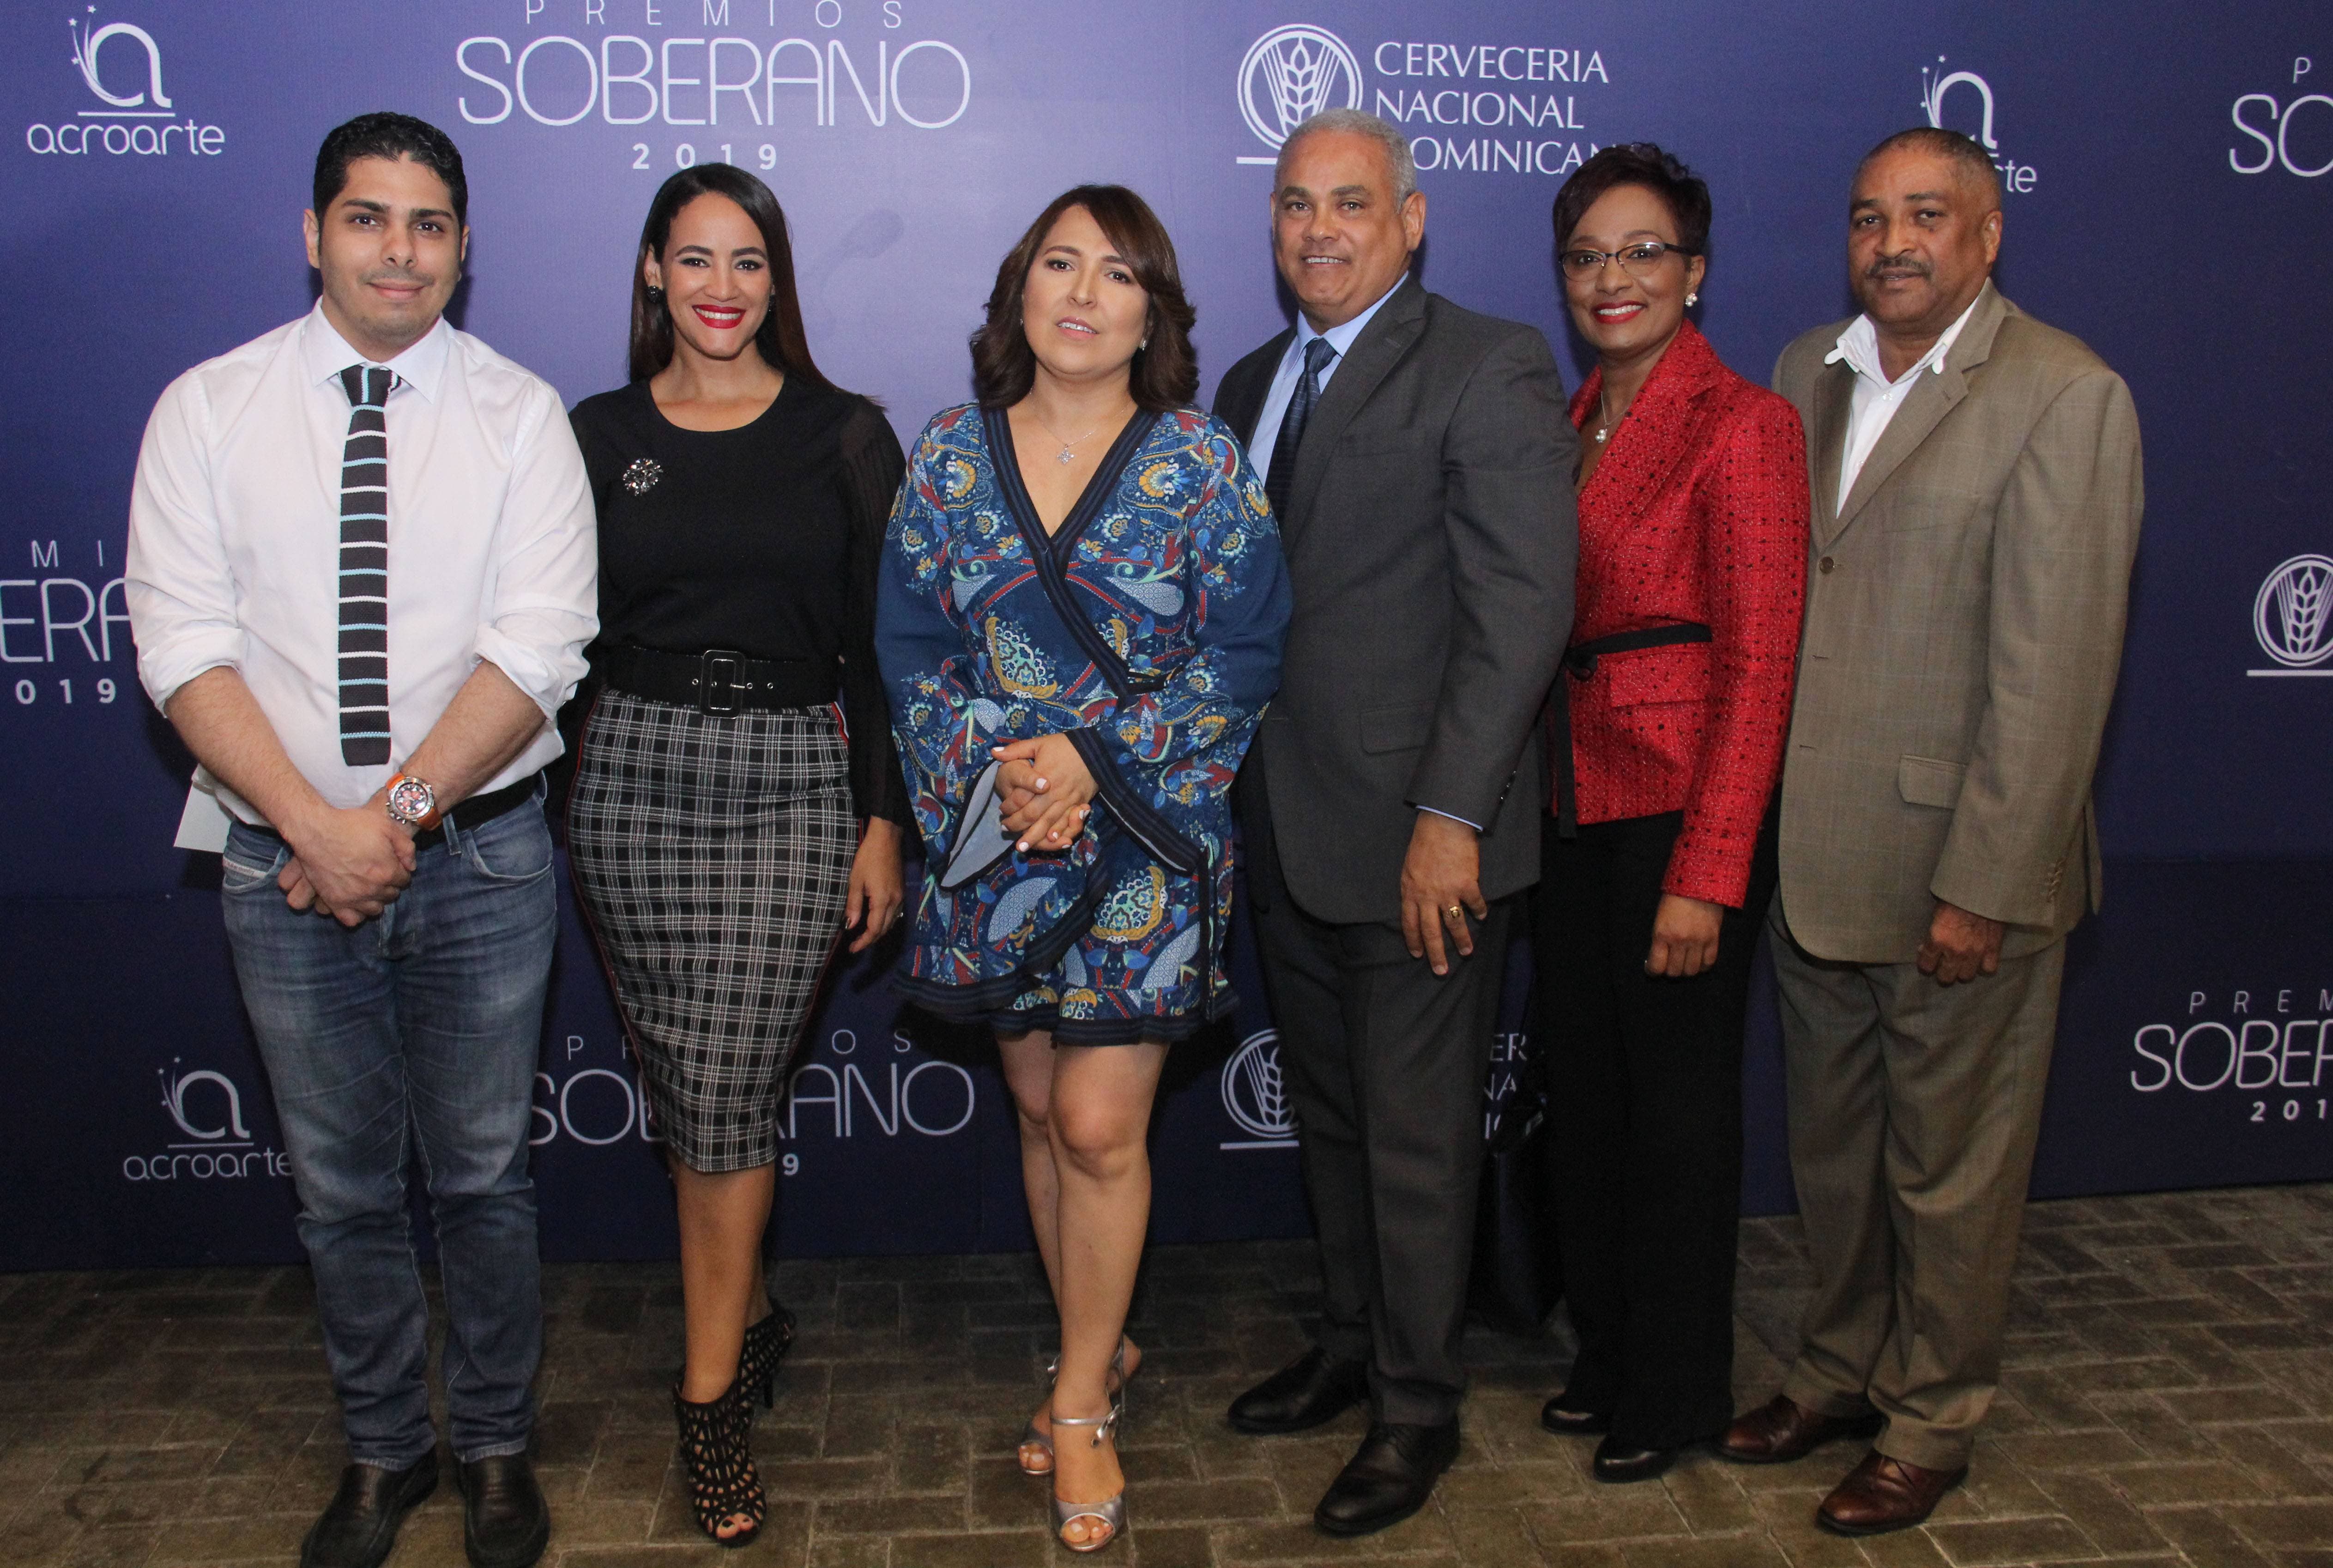 Premios Soberano 2019 se prepara para el mejor espectáculo en marzo